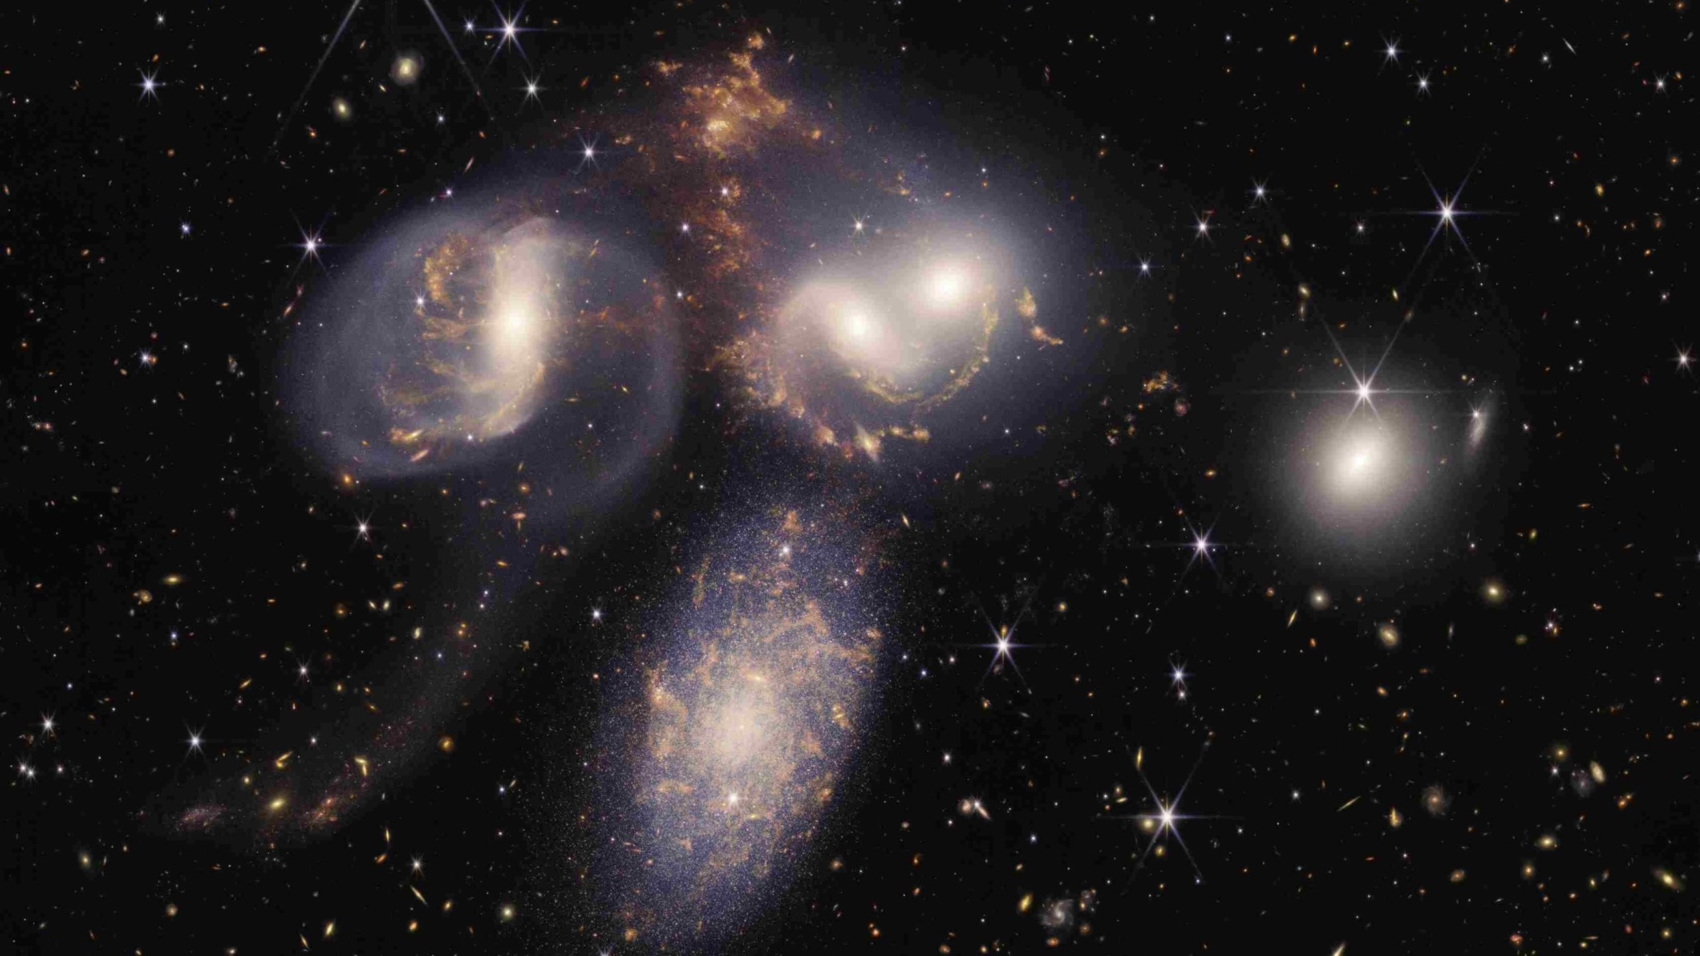 Stephan’s Quintet (Image Credit - NASA)